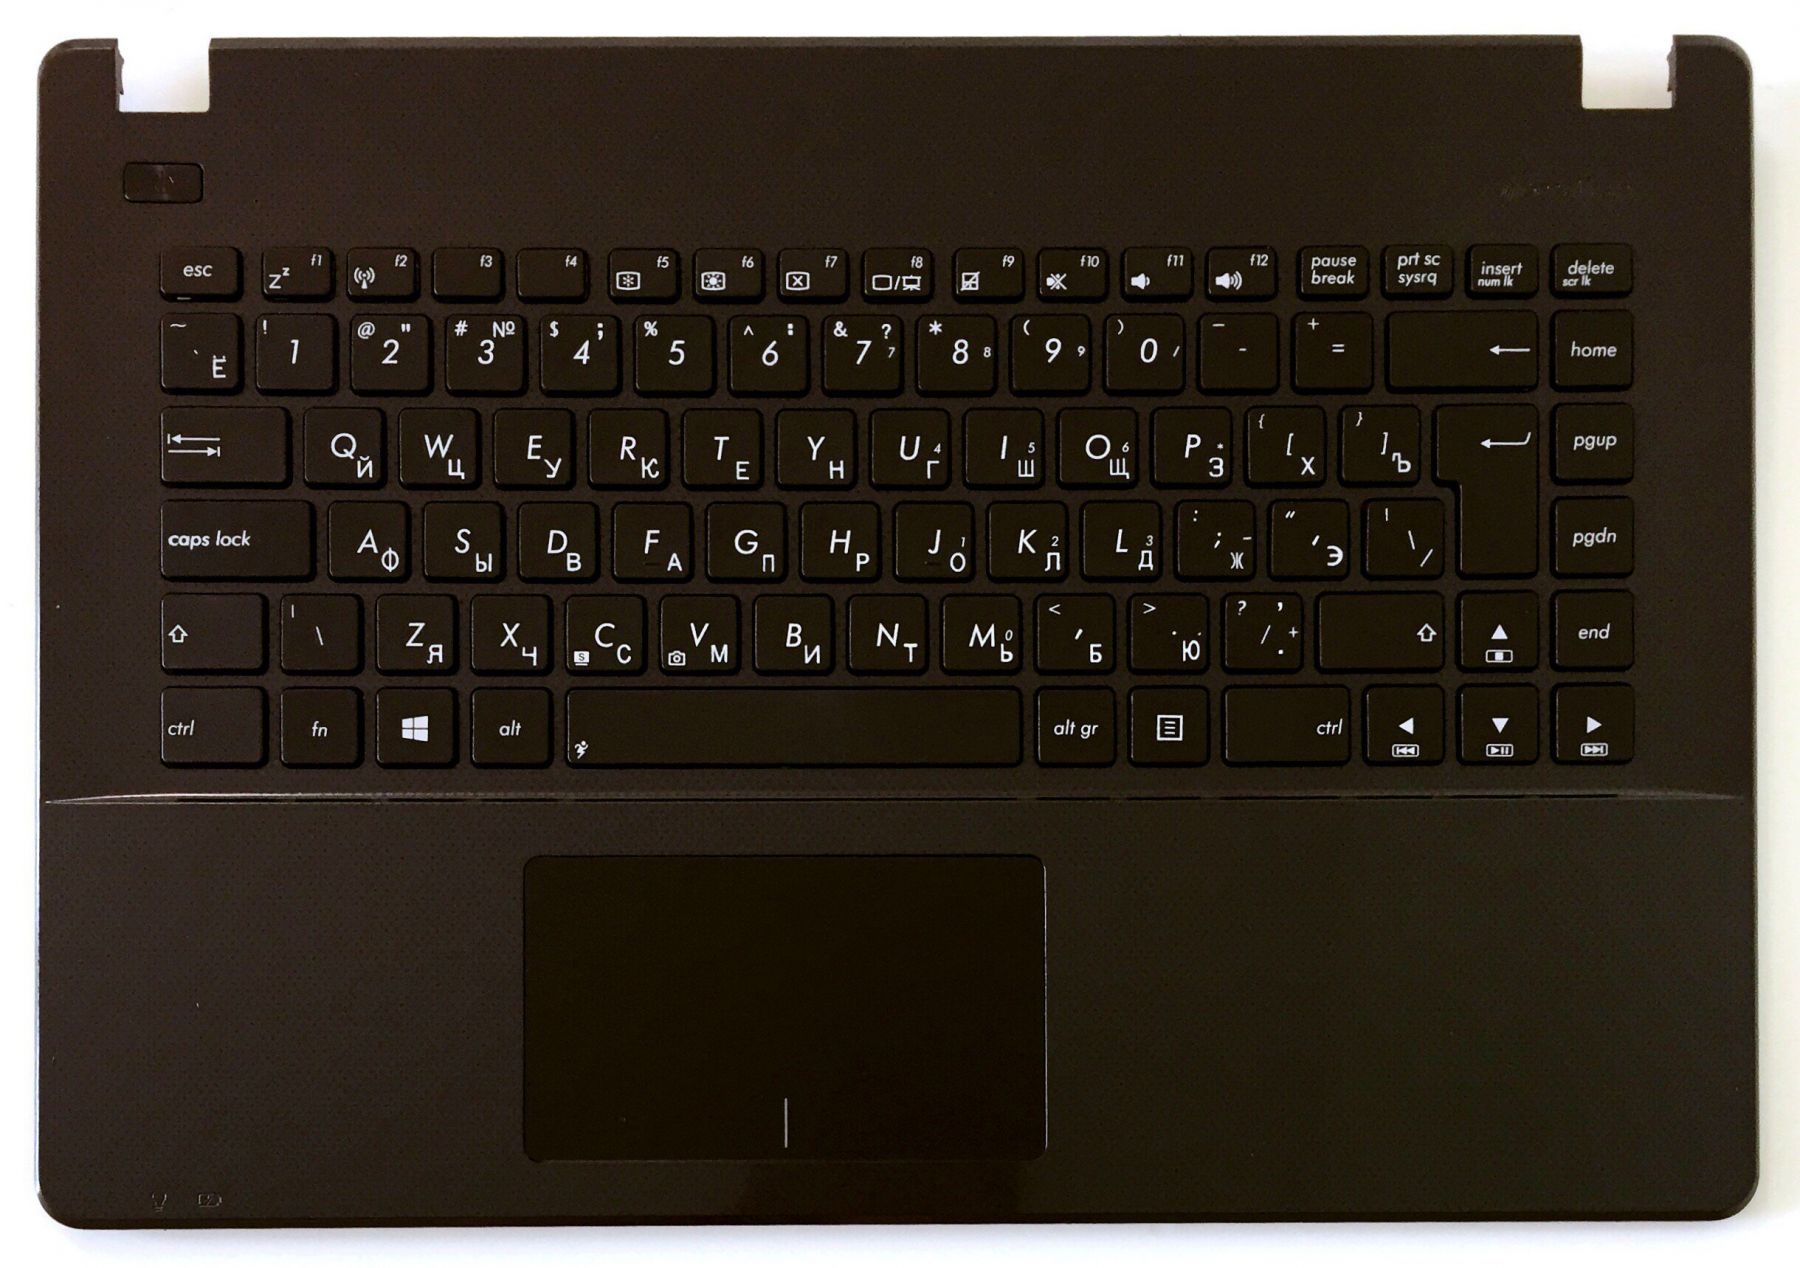 Включение звука в ноутбуке — регулирование громкости на клавиатуре